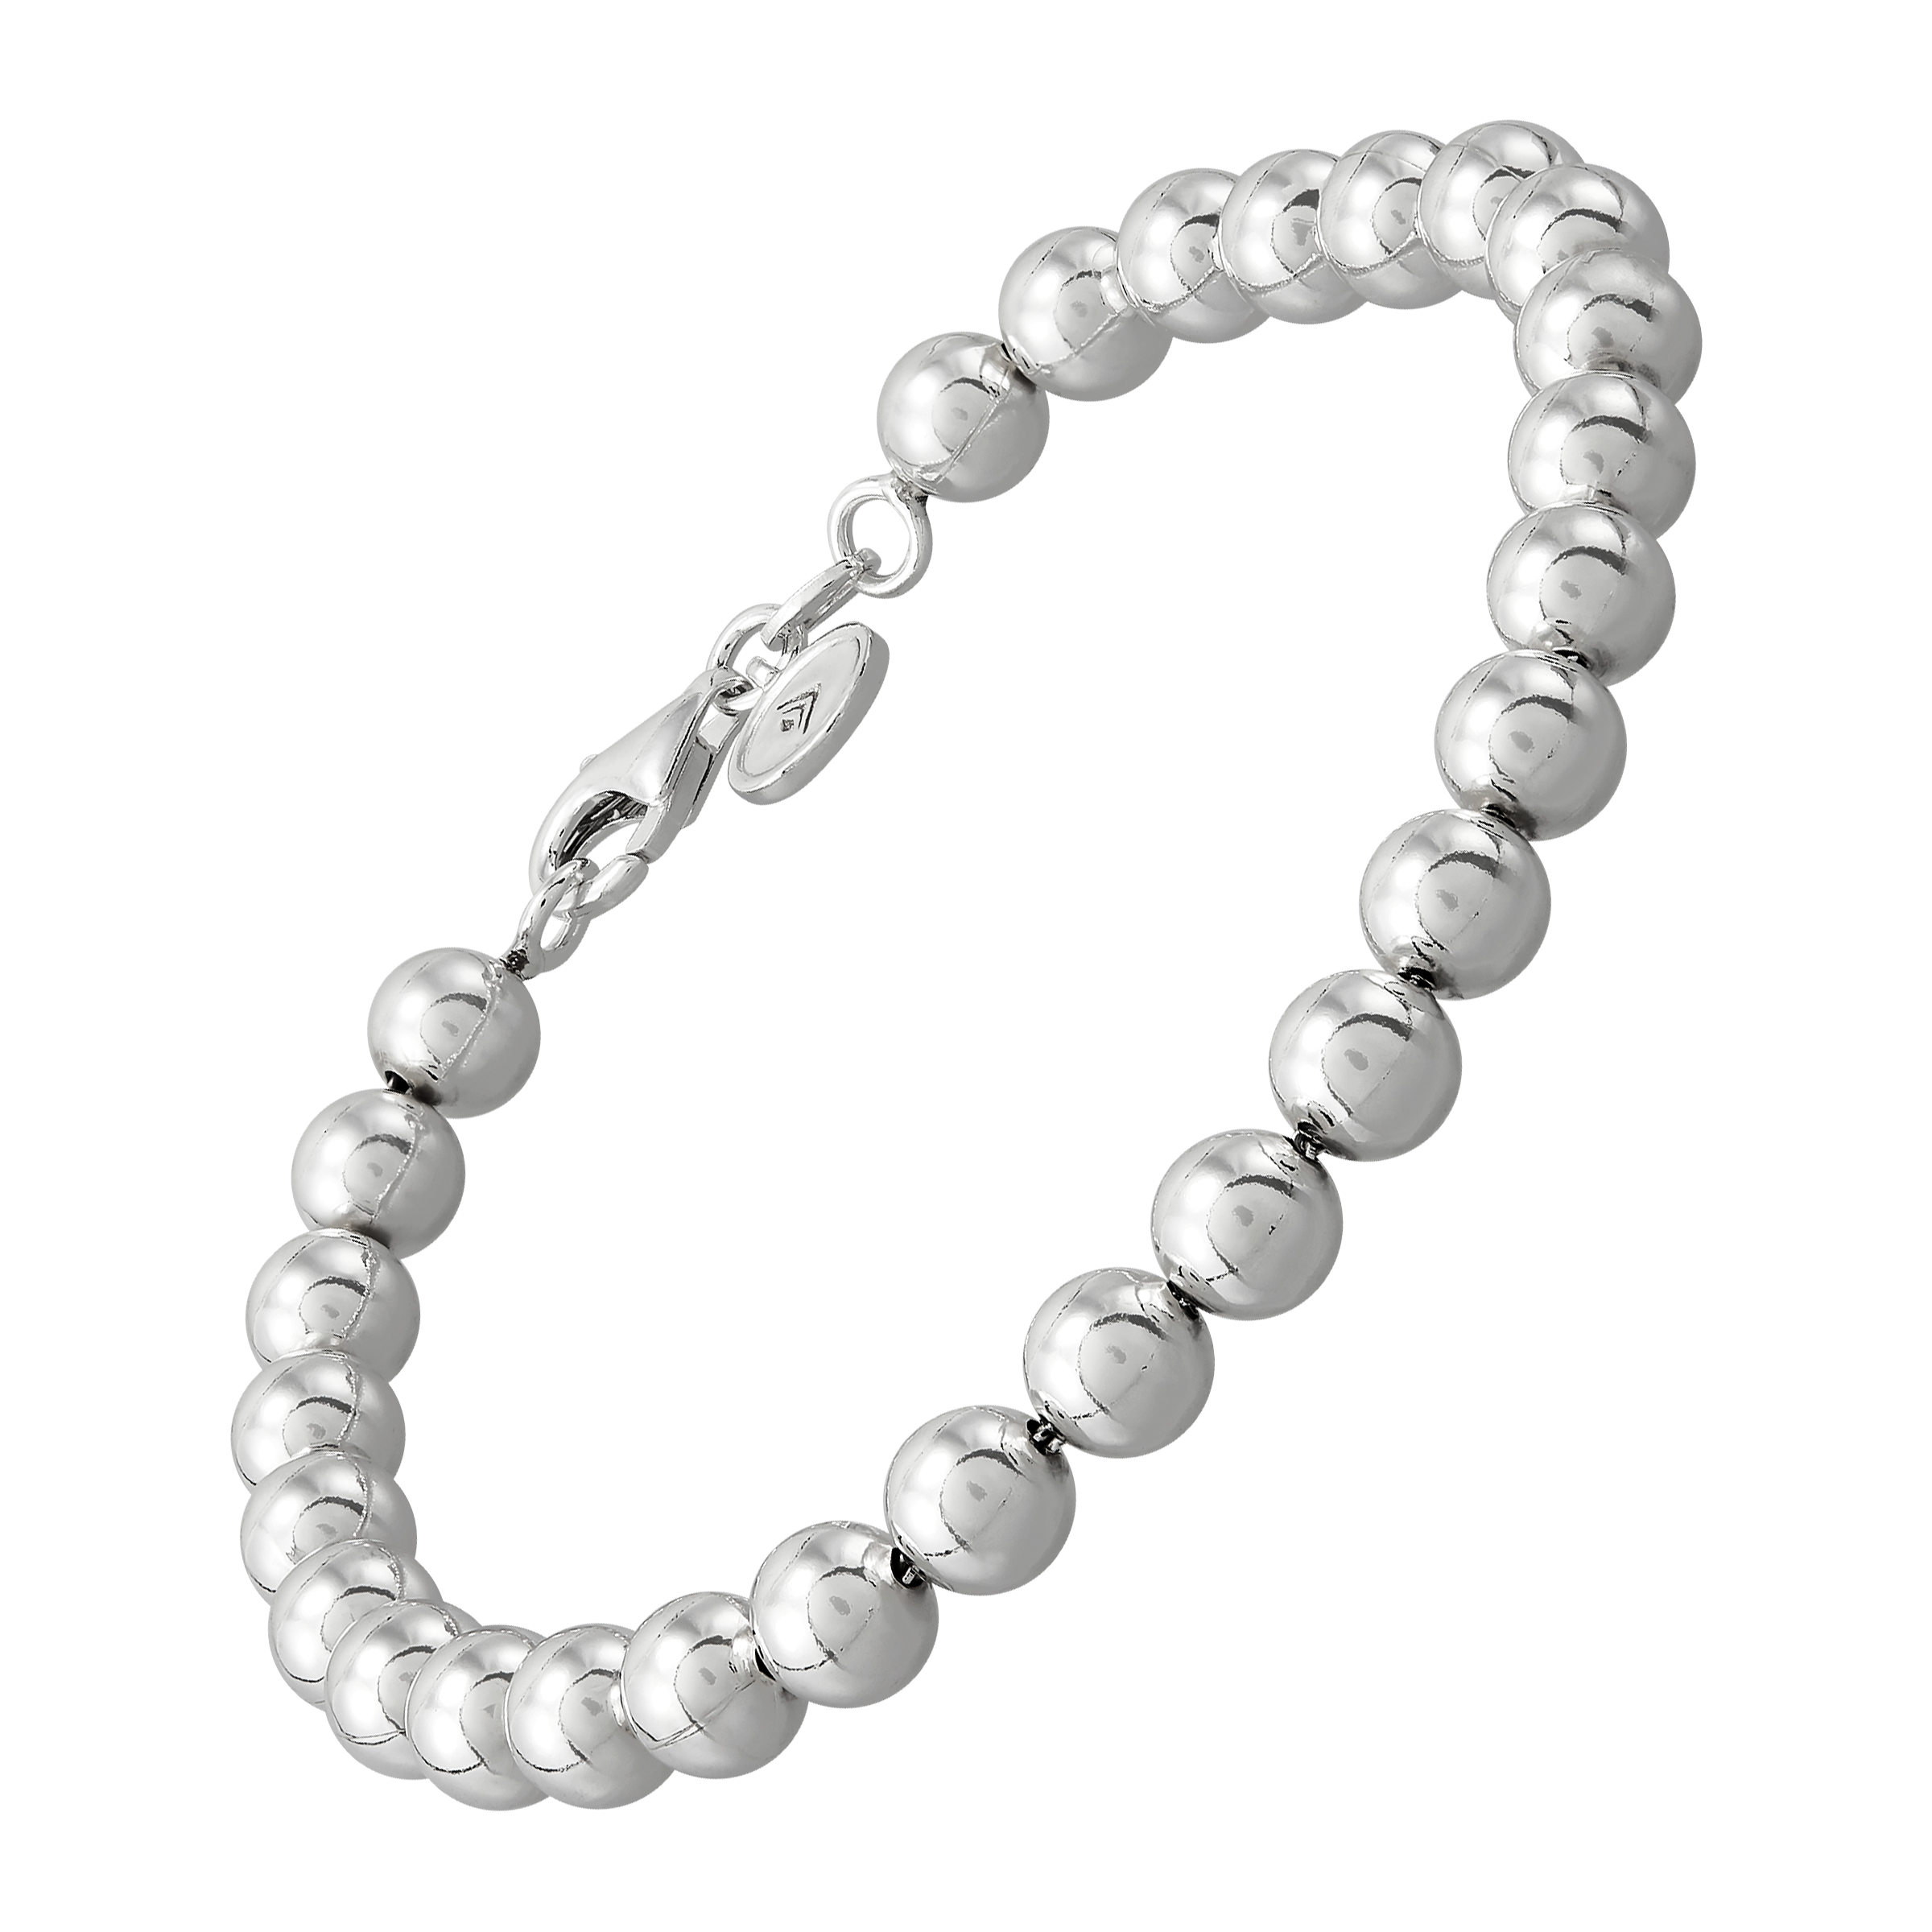 Silver turquoise beads dainty bracelet - NicteShop